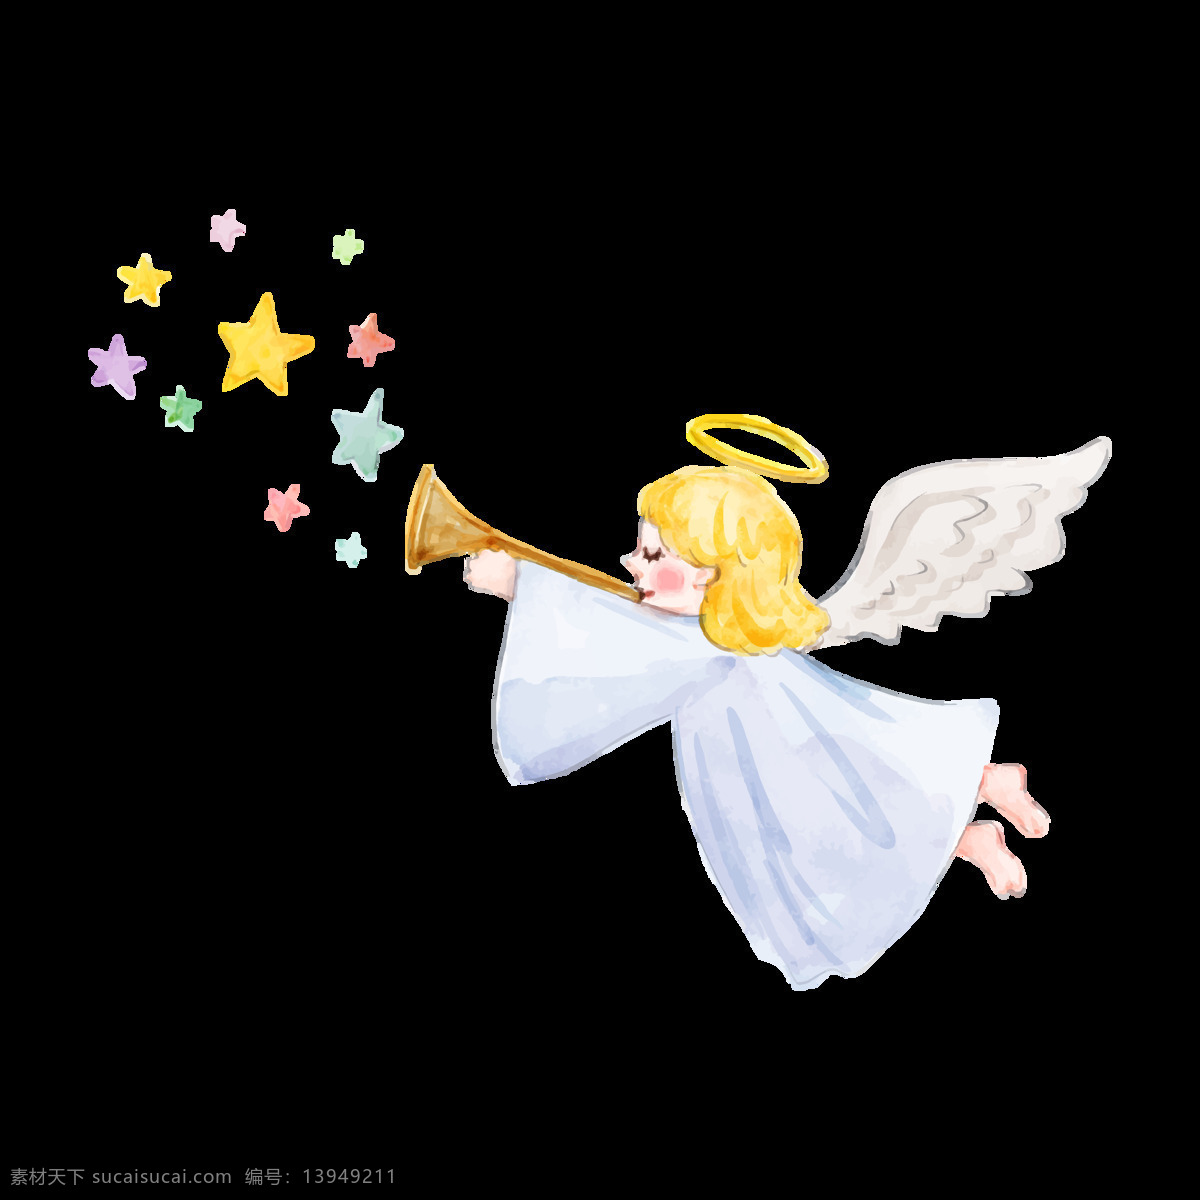 卡通小天使 天使图片 可爱天使 天使免扣图 png图片